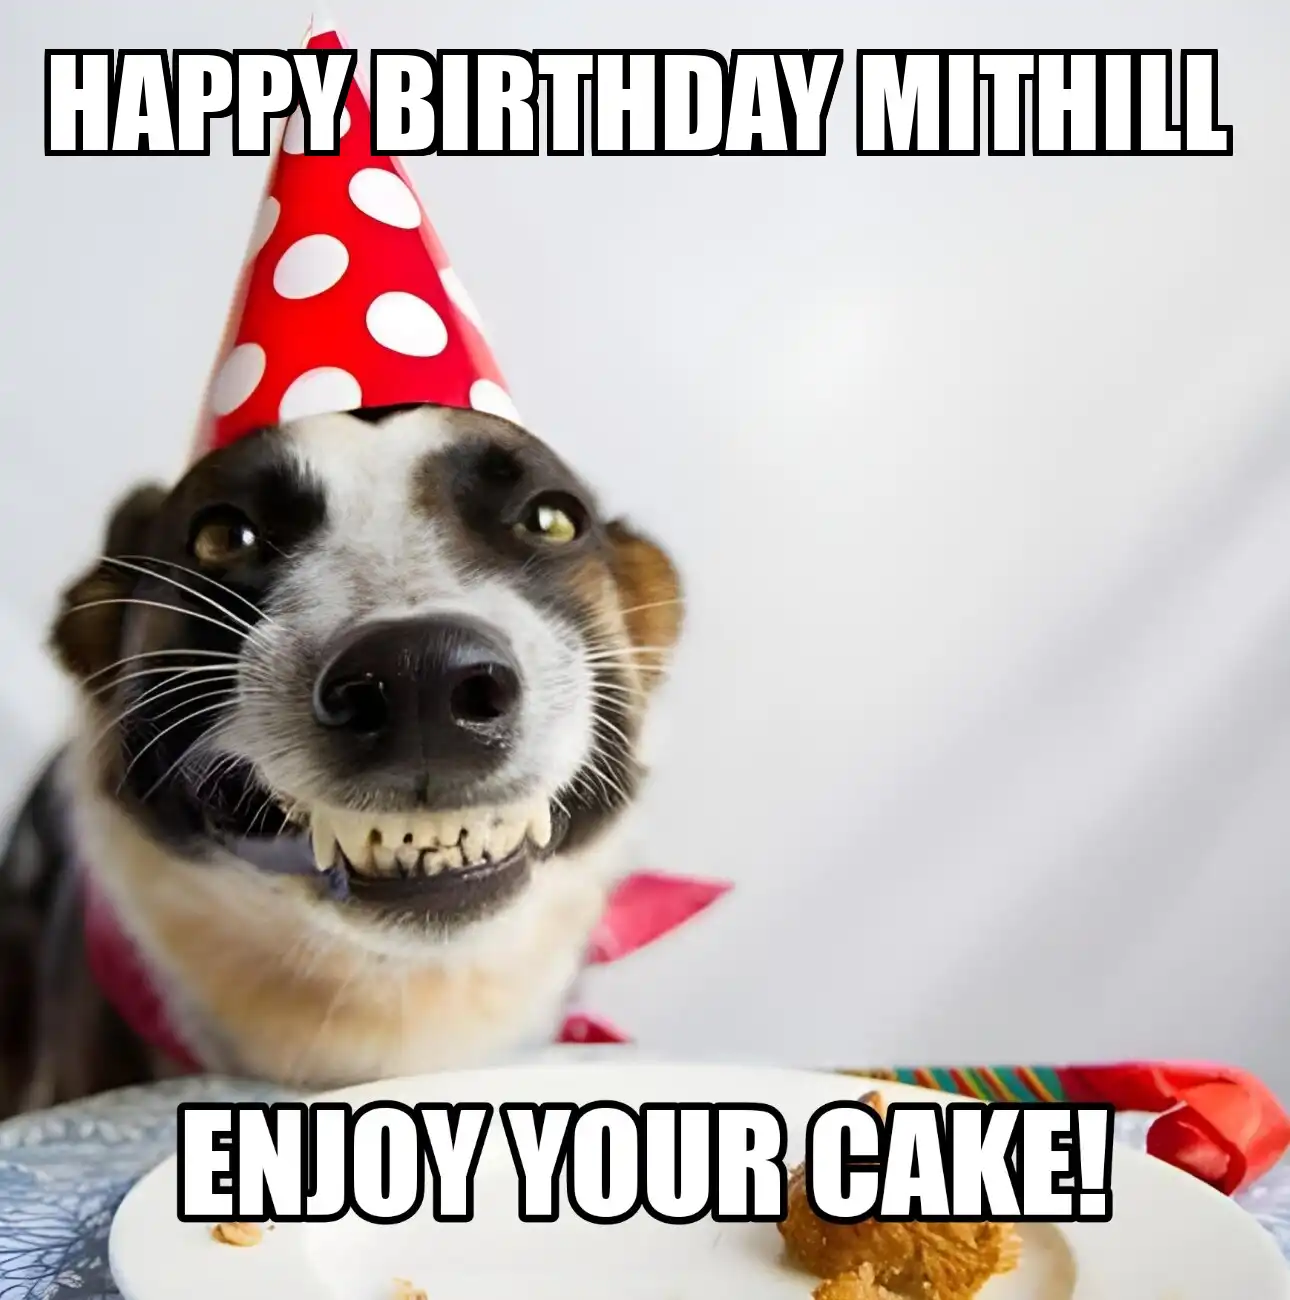 Happy Birthday Mithill Enjoy Your Cake Dog Meme